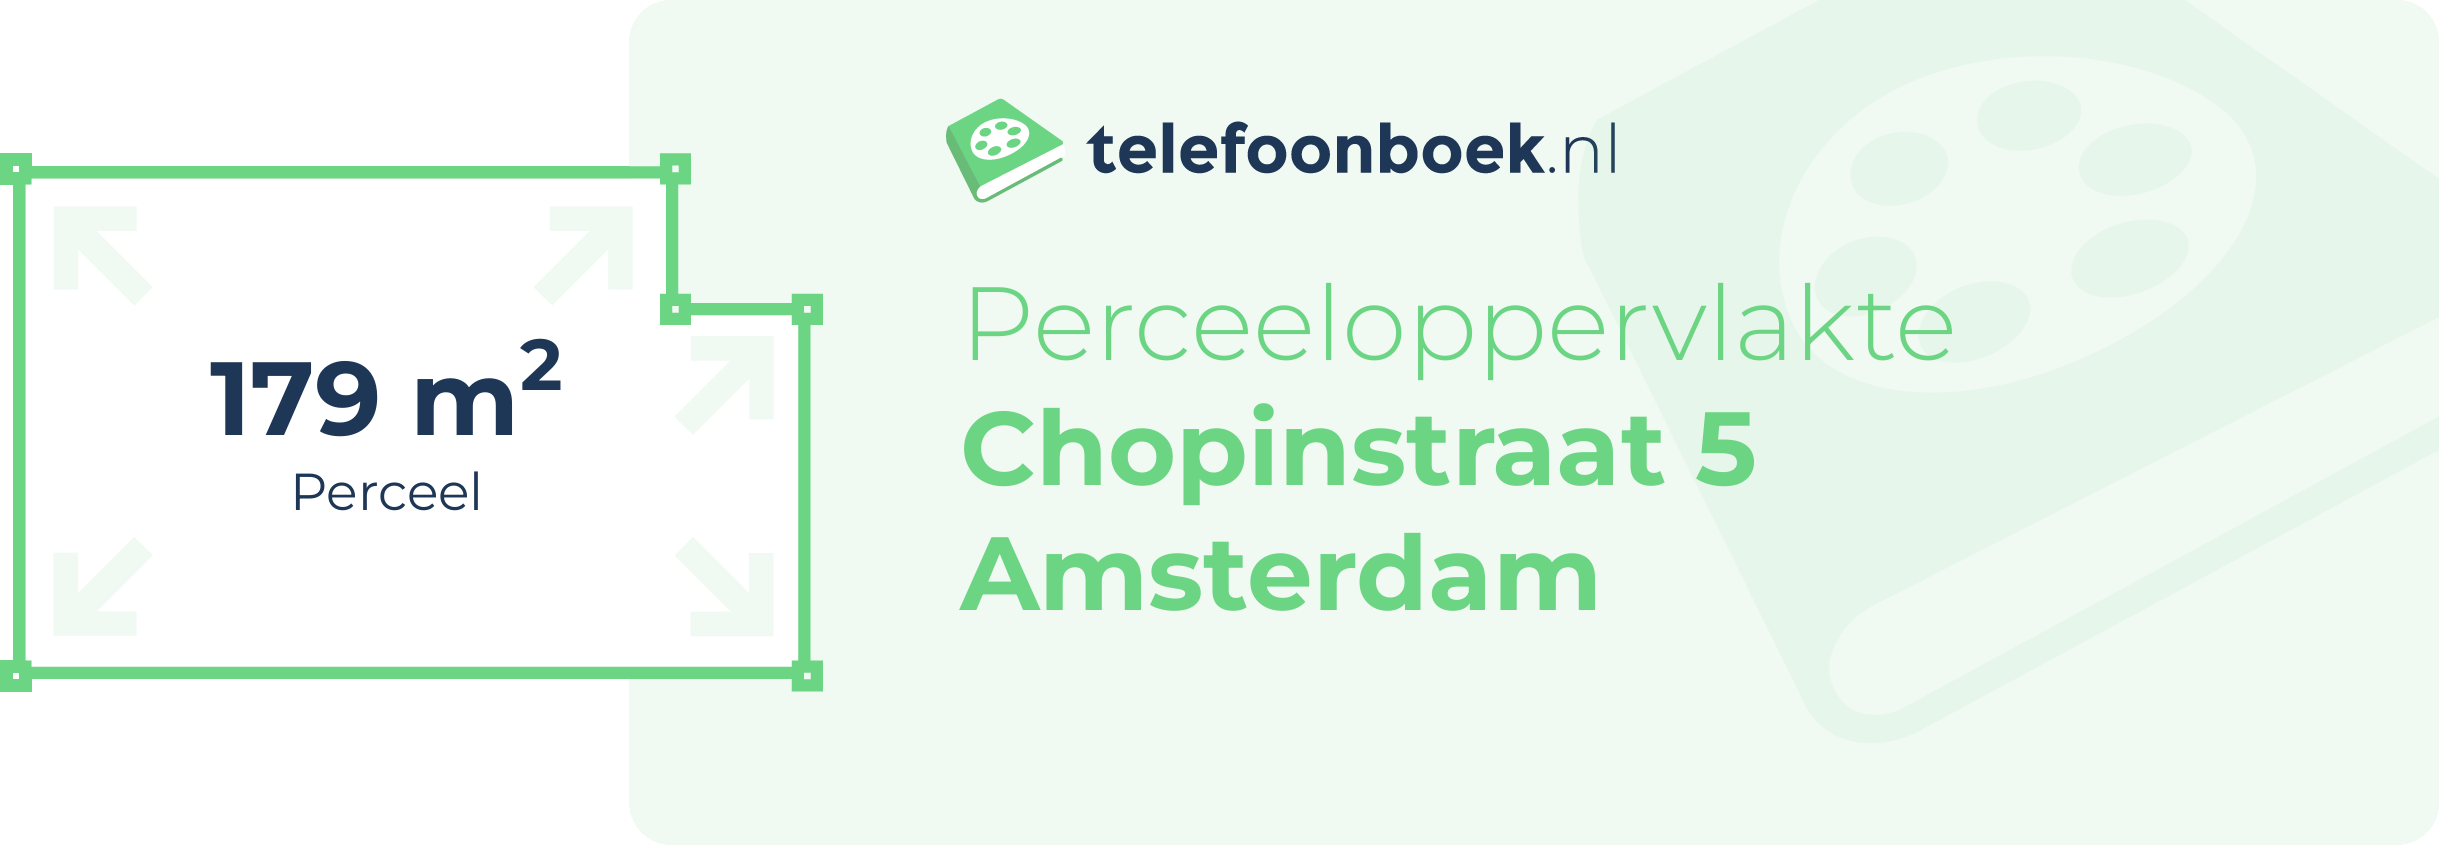 Perceeloppervlakte Chopinstraat 5 Amsterdam